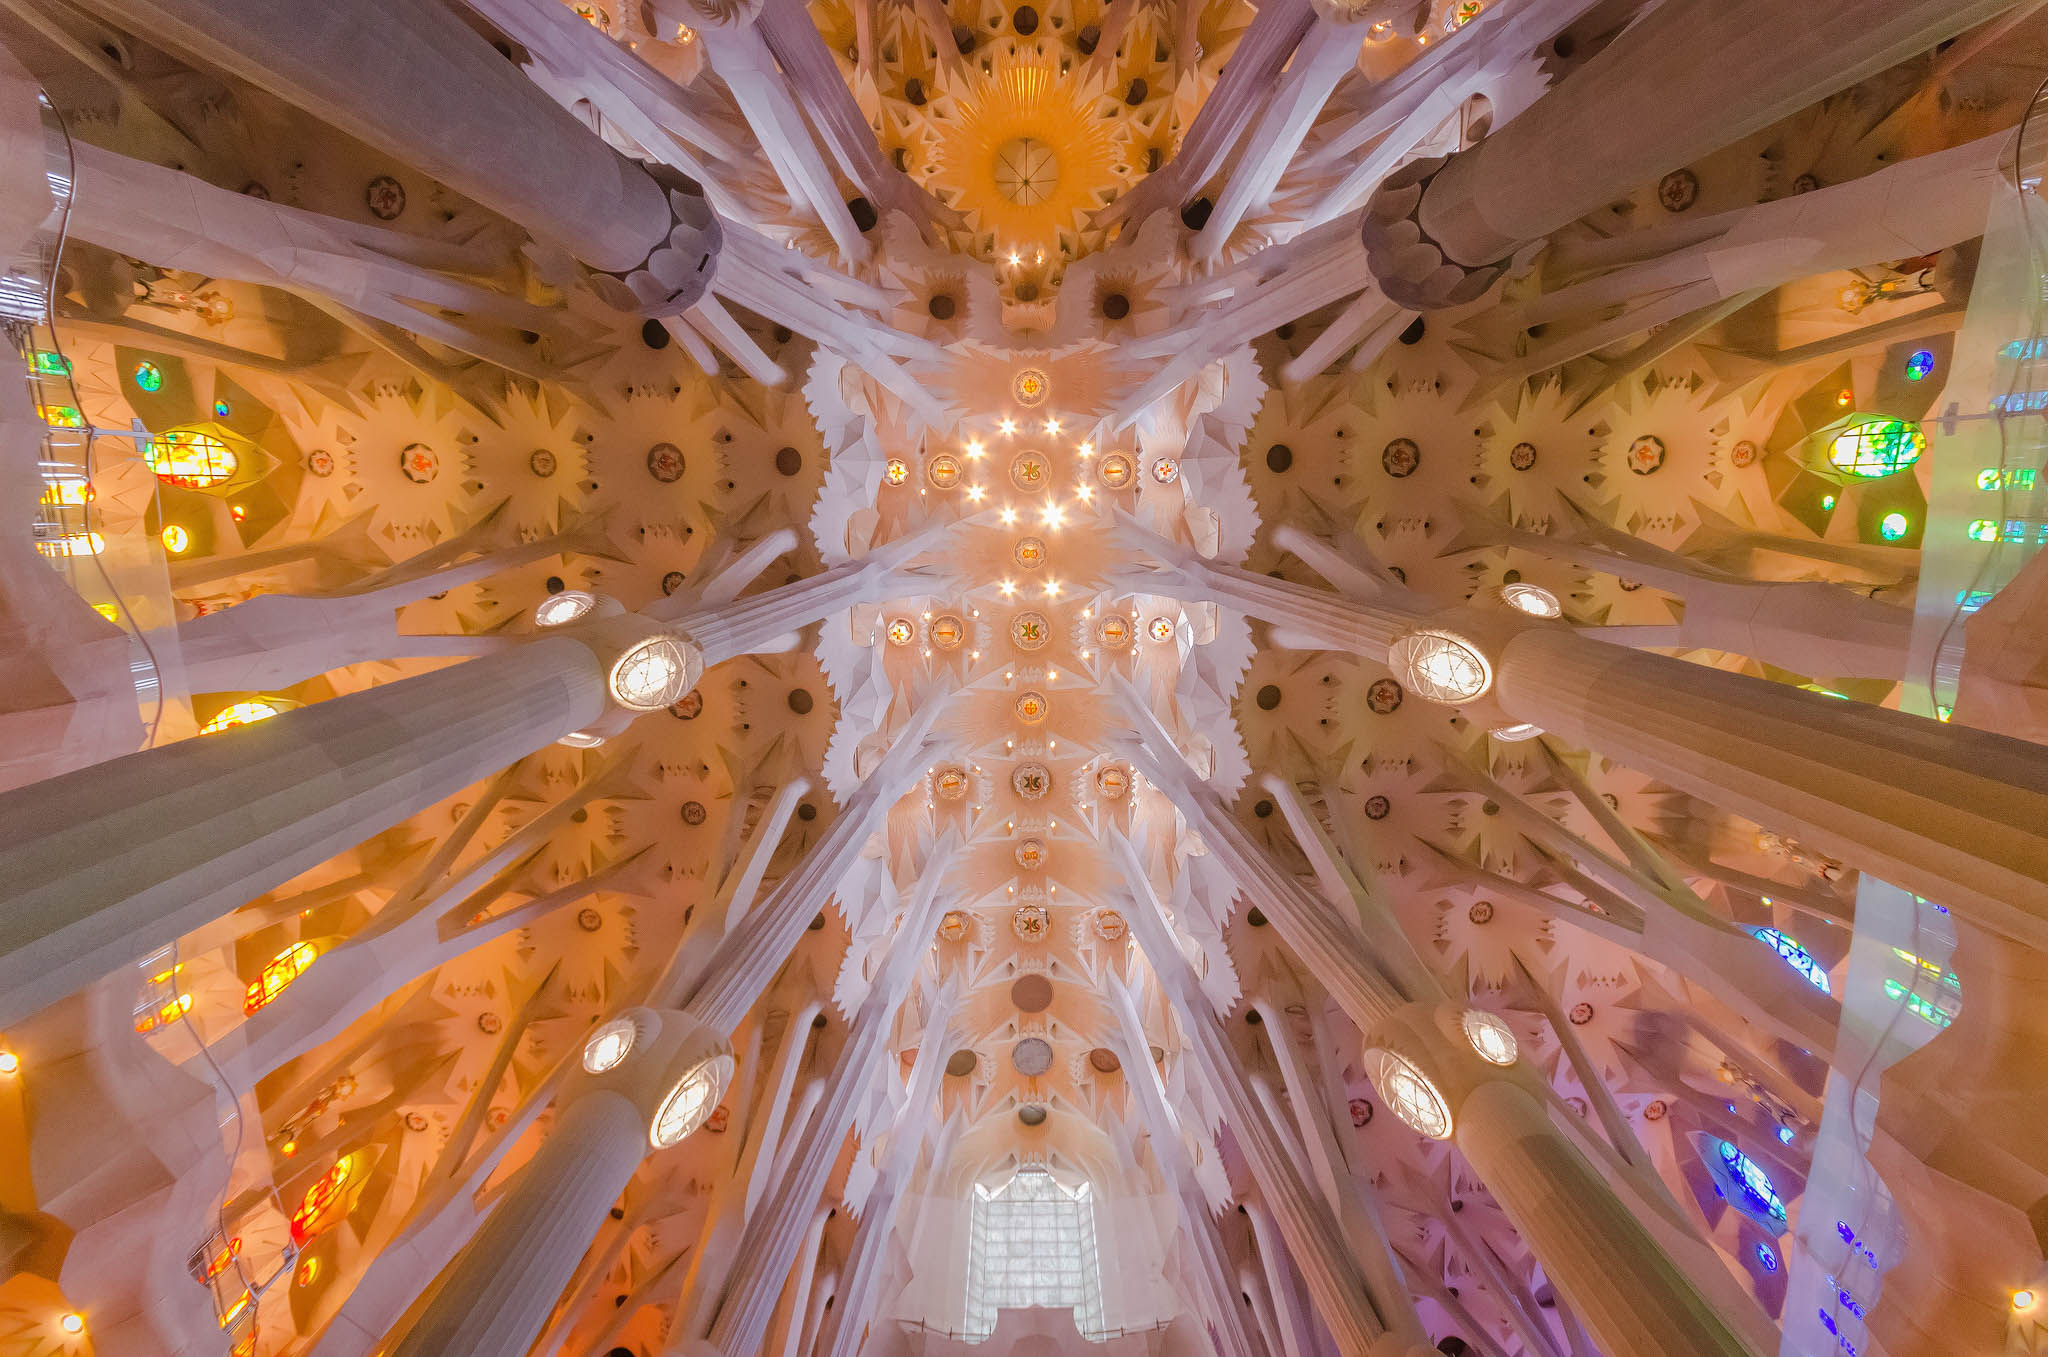 Ceiling of the Sagrada Familia